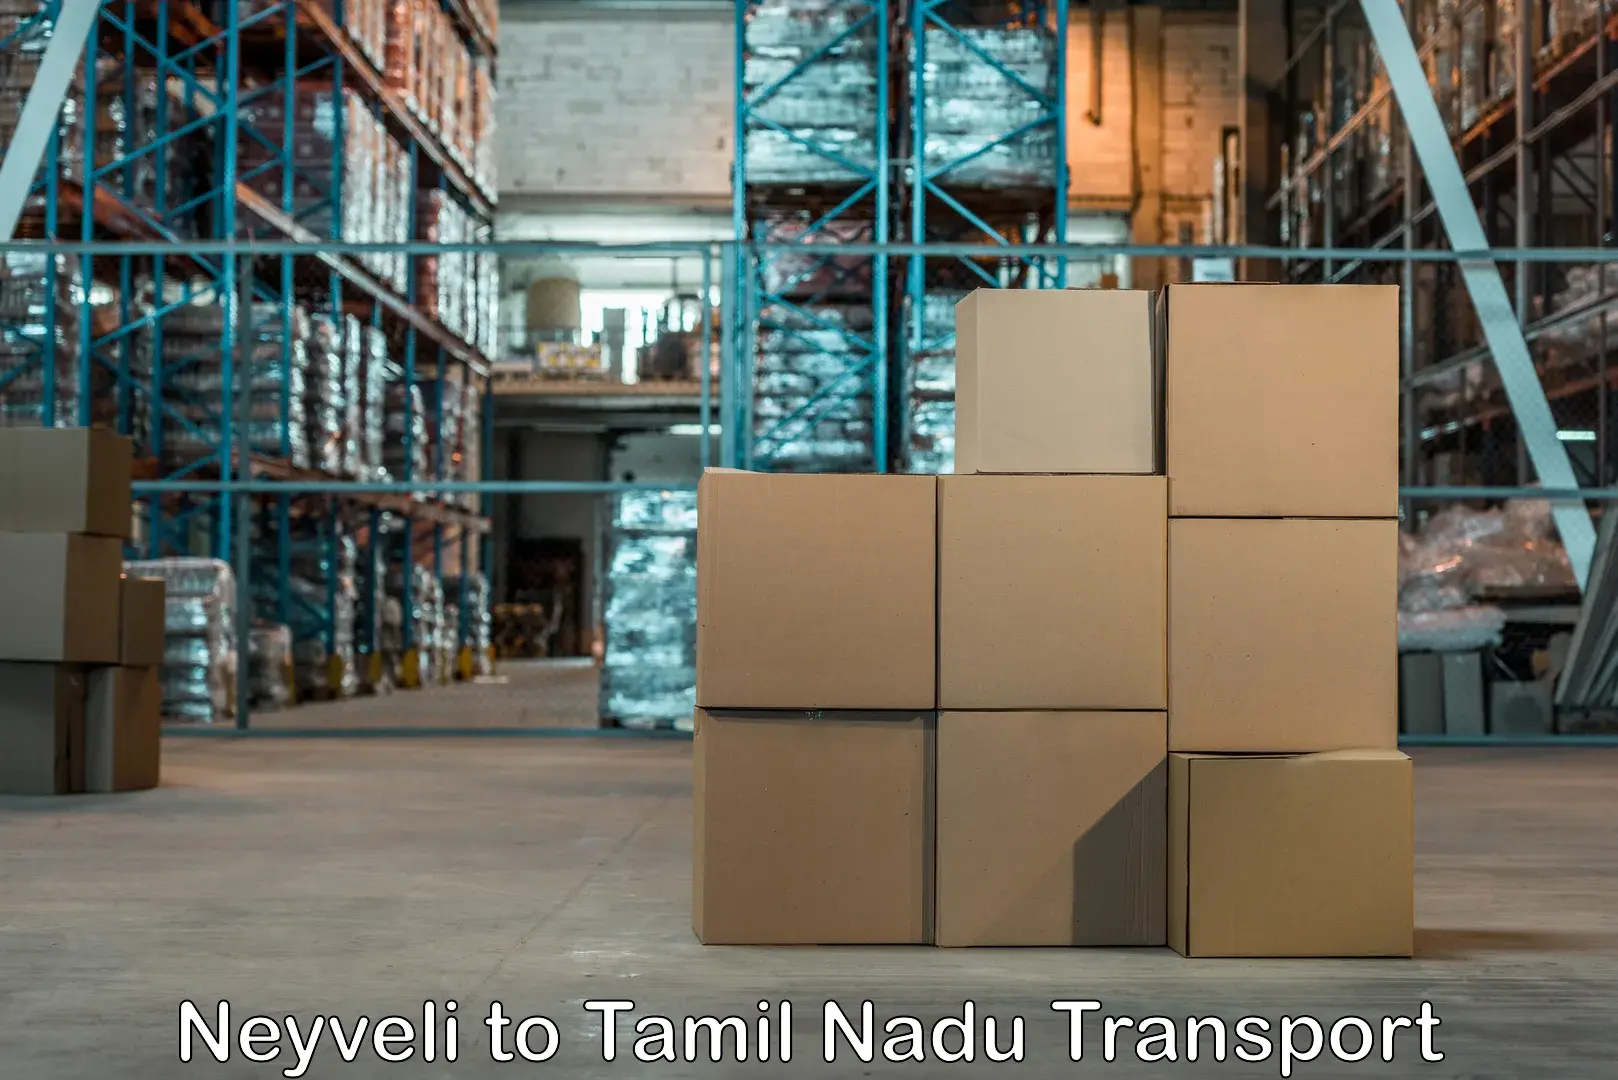 Online transport service Neyveli to Sathyamangalam